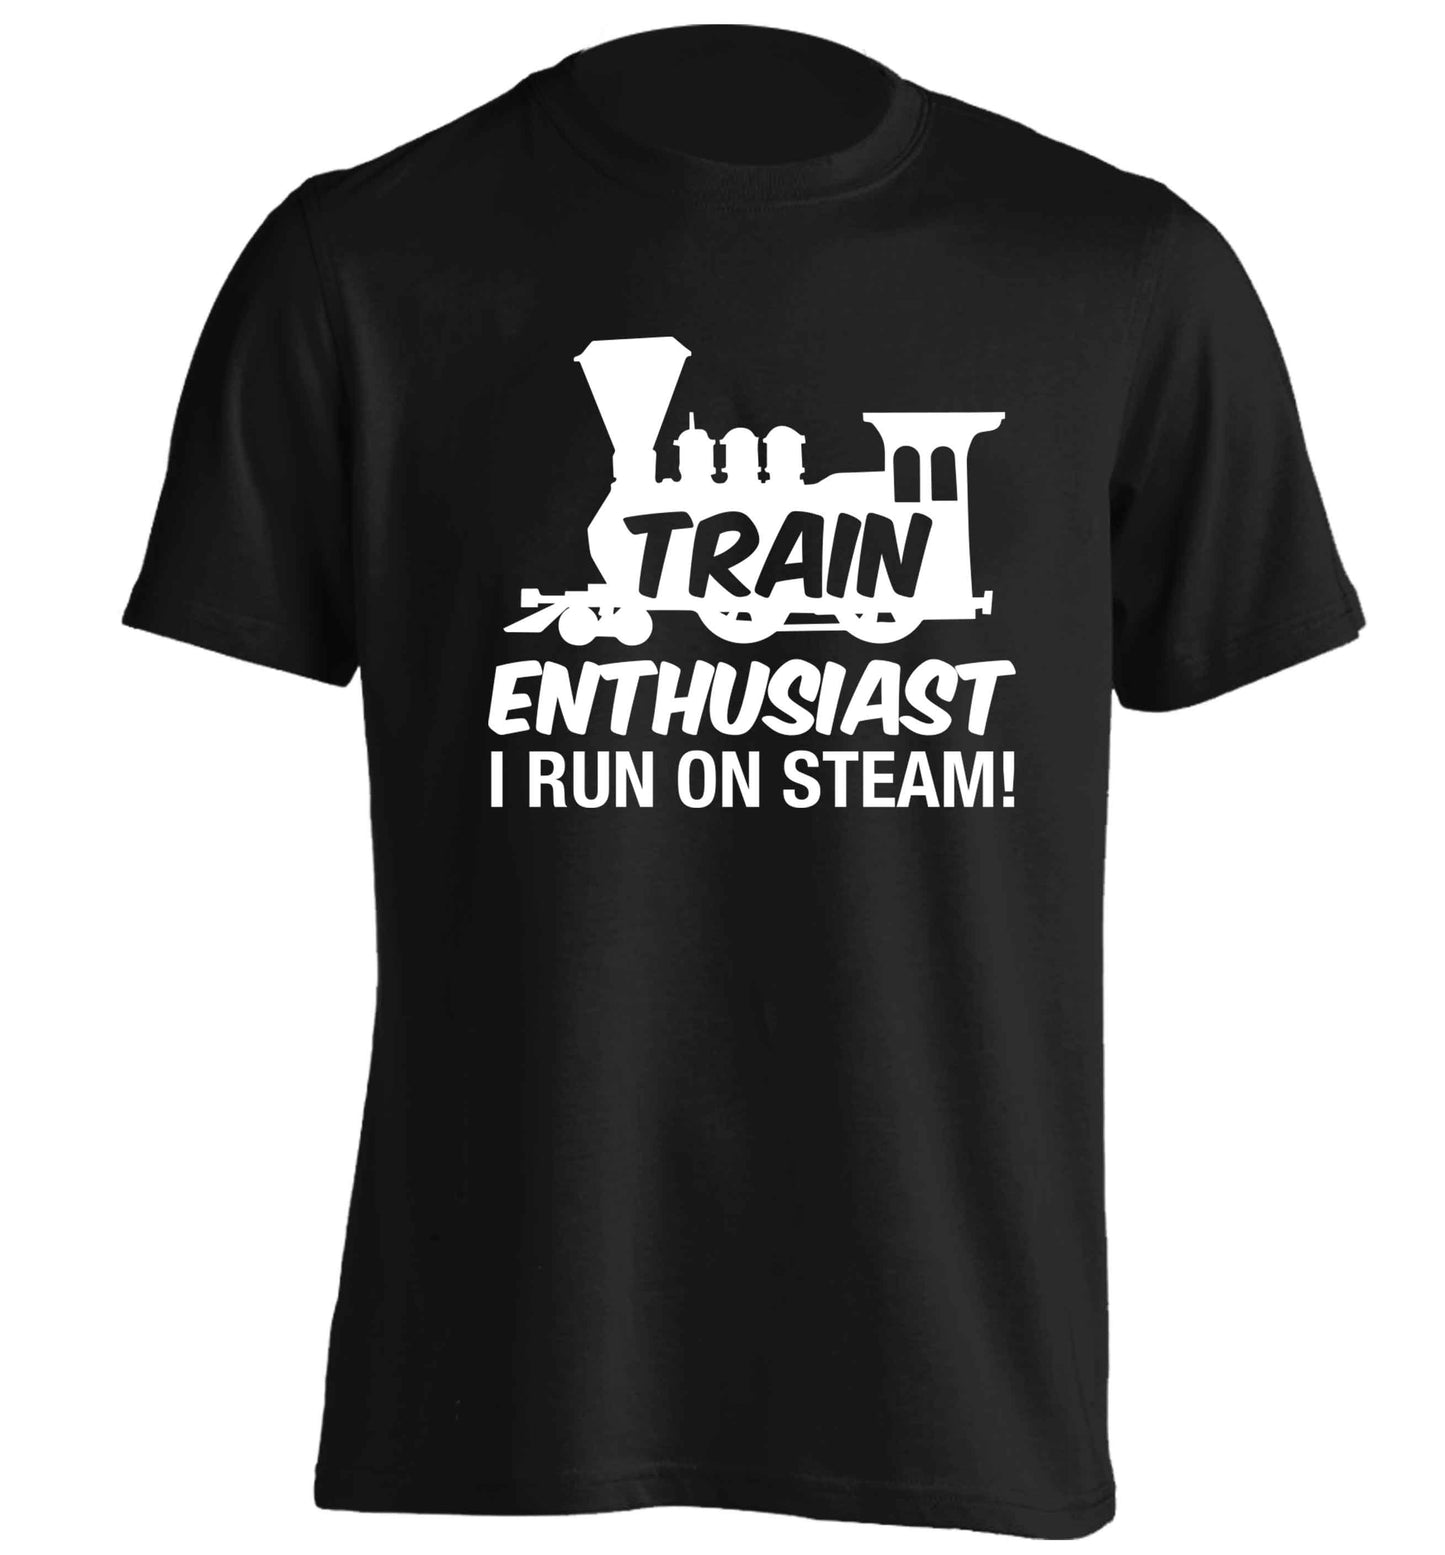 Train enthusiast I run on steam adults unisex black Tshirt 2XL